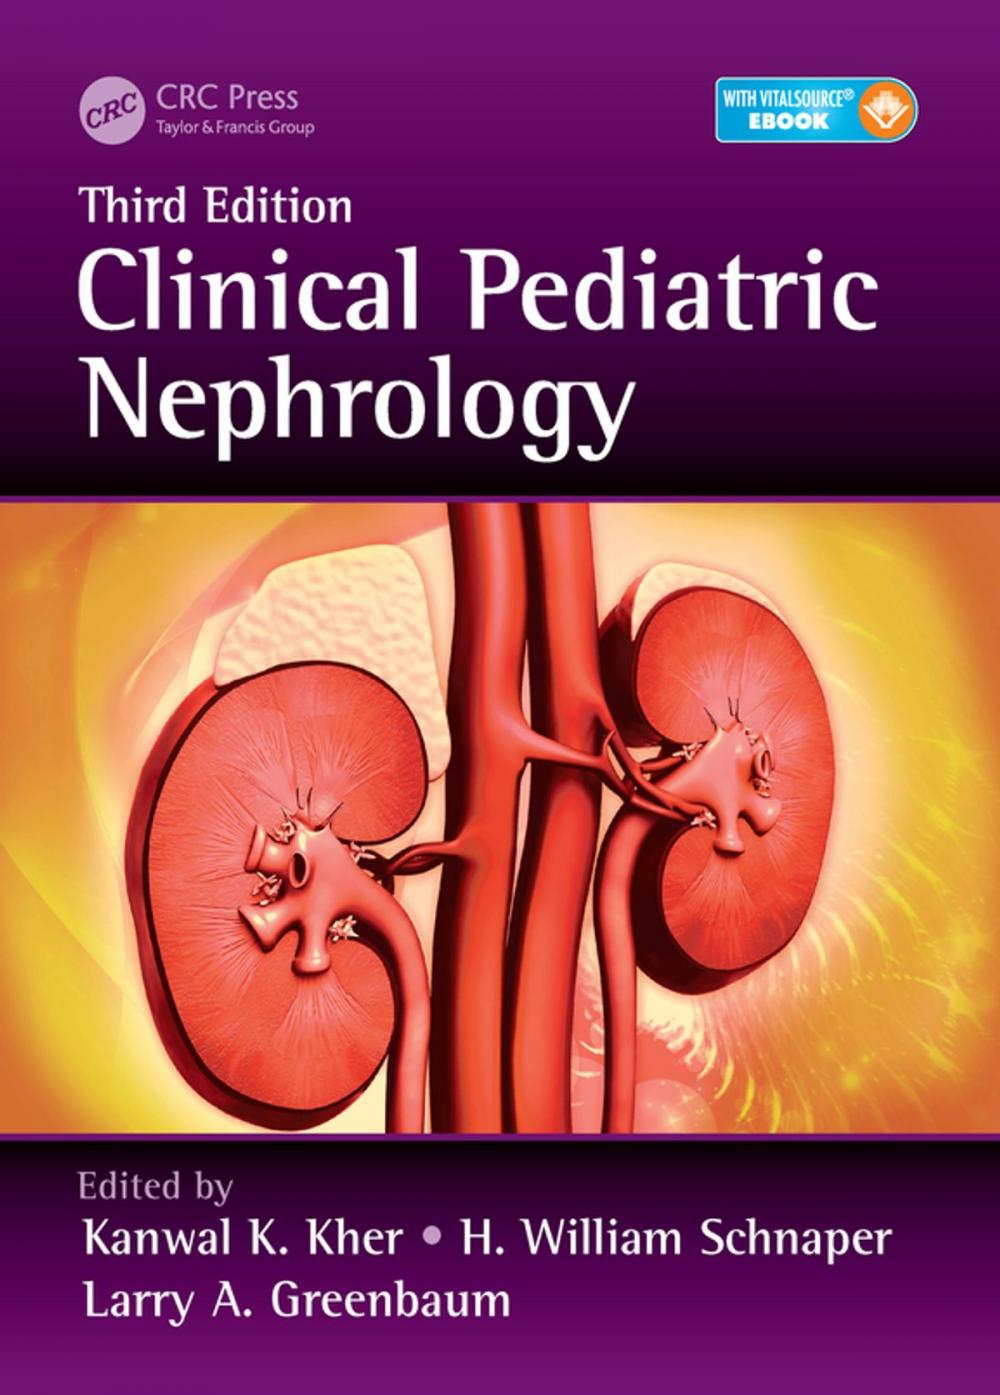 Big bigCover of Clinical Pediatric Nephrology